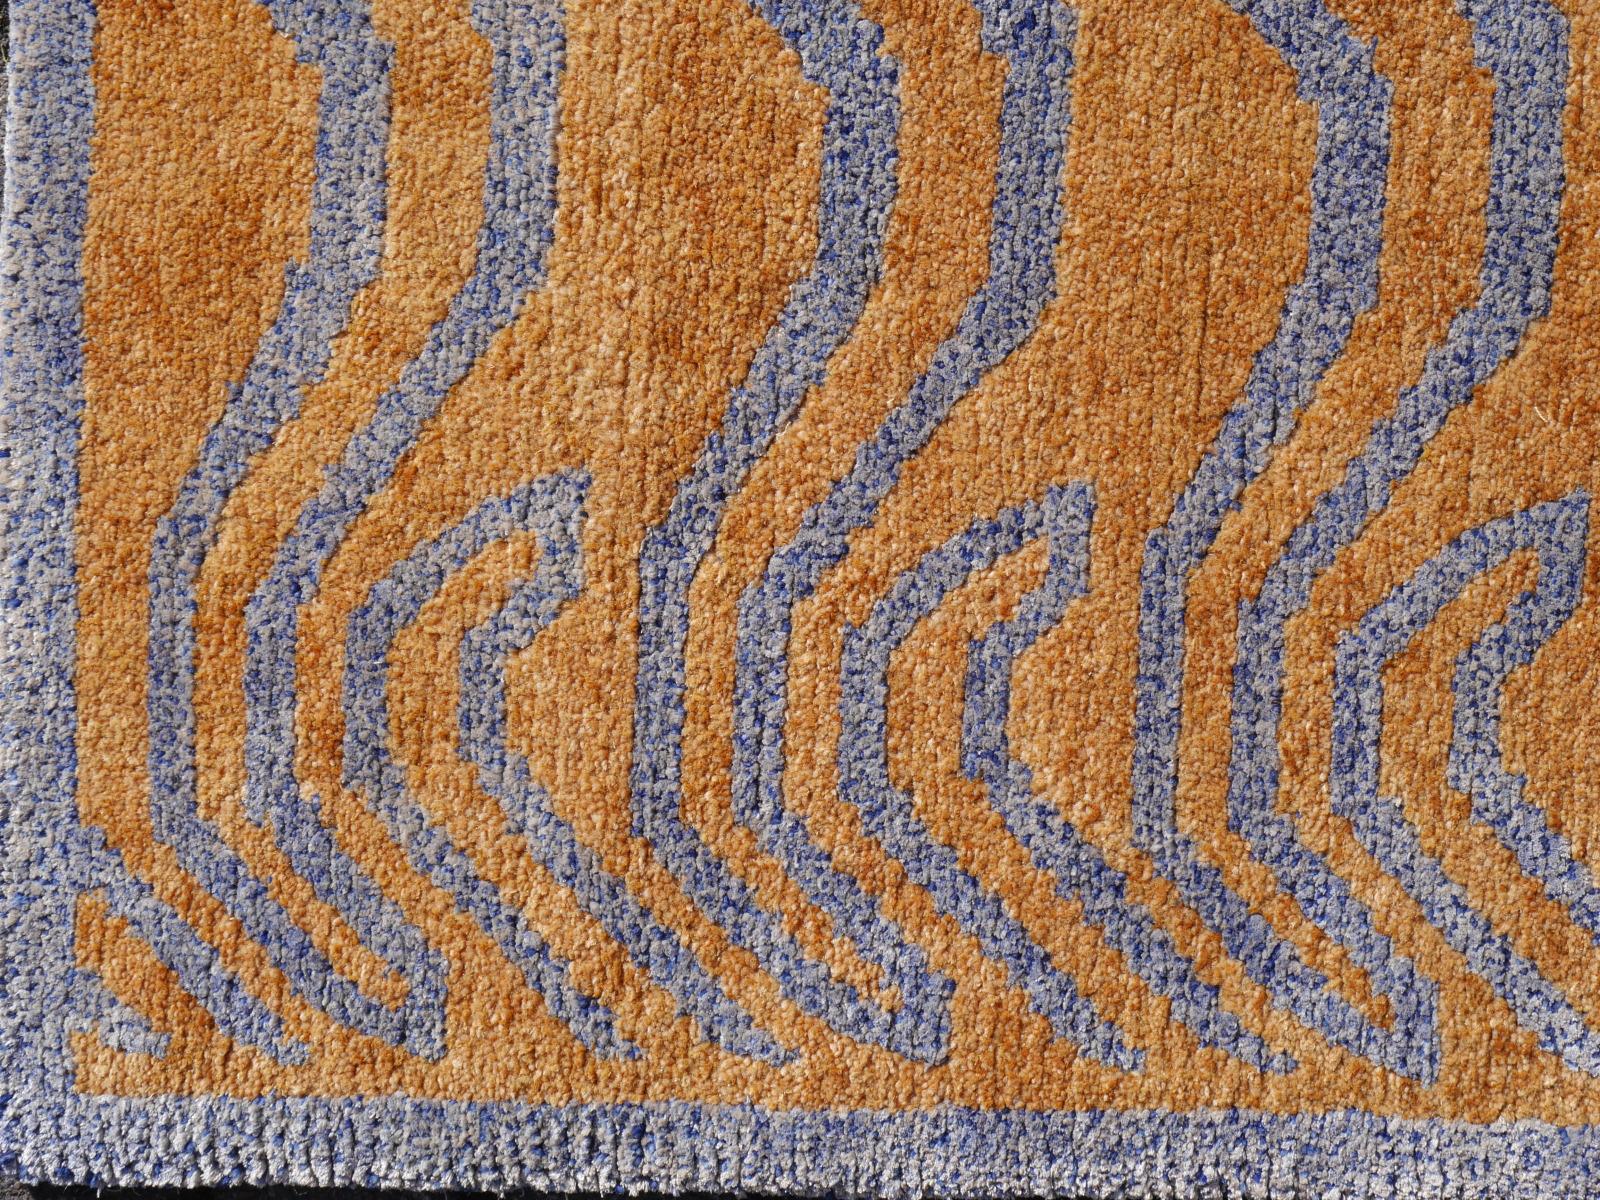 Un tapis tigre tibétain, noué à la main au Népal, en soie et laine.

Ce motif traditionnel de tapis tigre se trouve généralement sur des tapis anciens appelés Khaden. Il s'agit d'un tapis de petite taille, d'environ 3 x 6 pieds, qui était utilisé